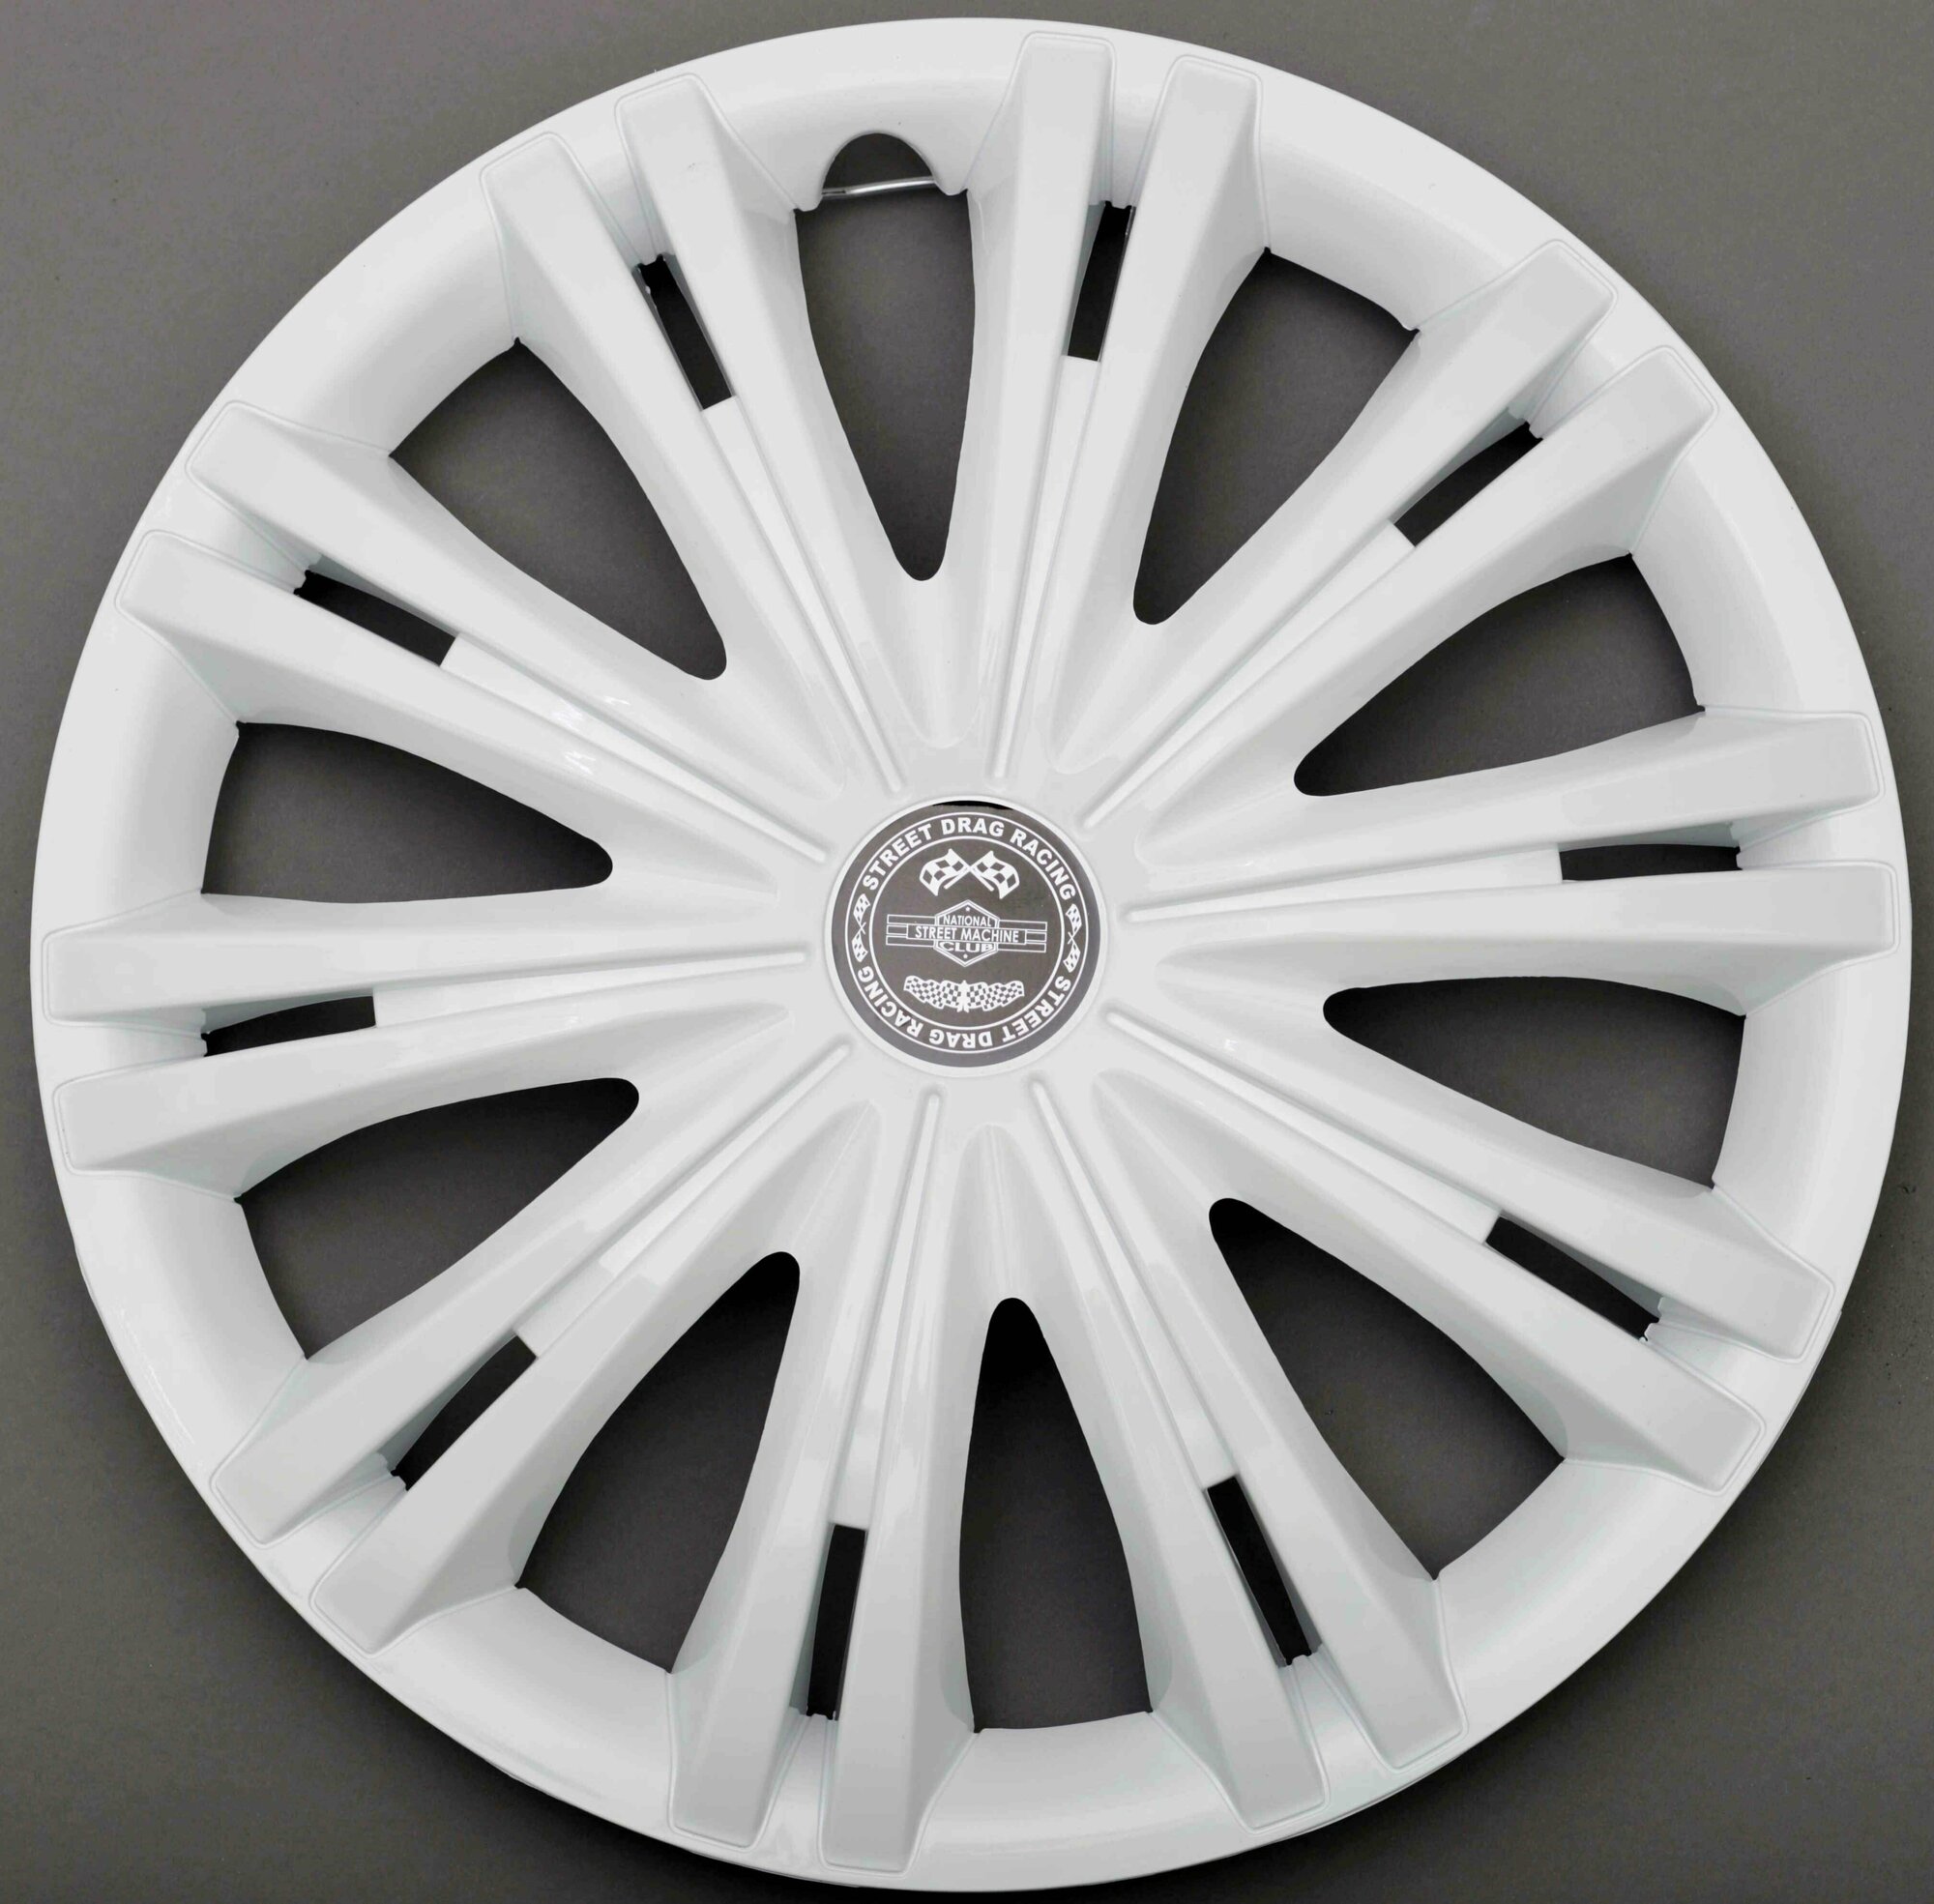 Колпаки R15 4 на колеса авто гига белая р15 на диски радиус 15 дюймов легковой авто цвет белый white